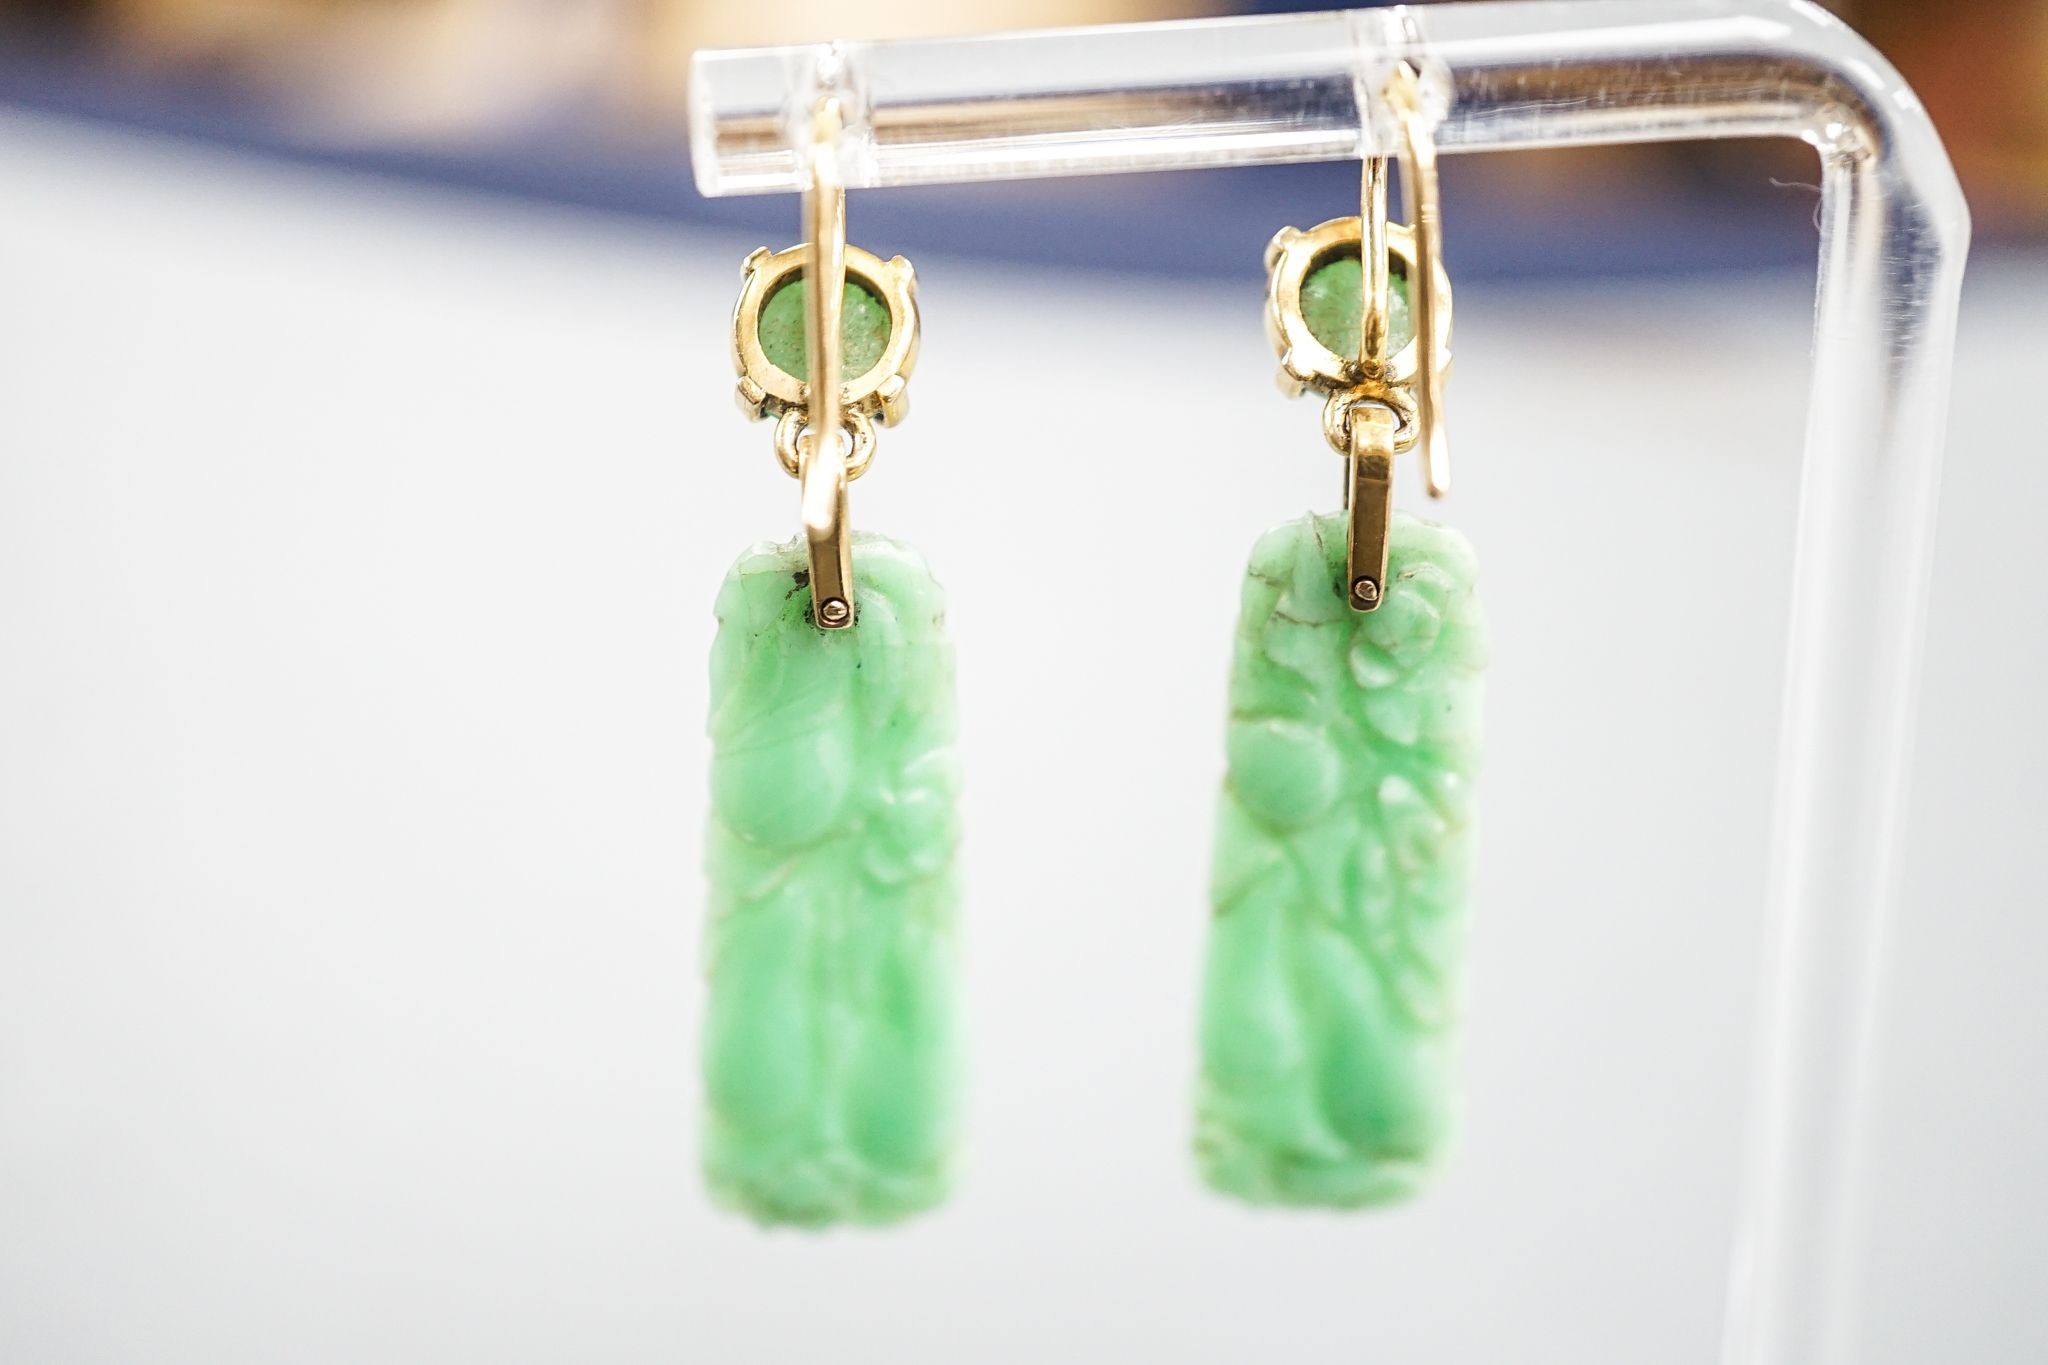 A pair of yellow metal mounted carved jade drop earrings, 43mm, gross 6.8 grams.